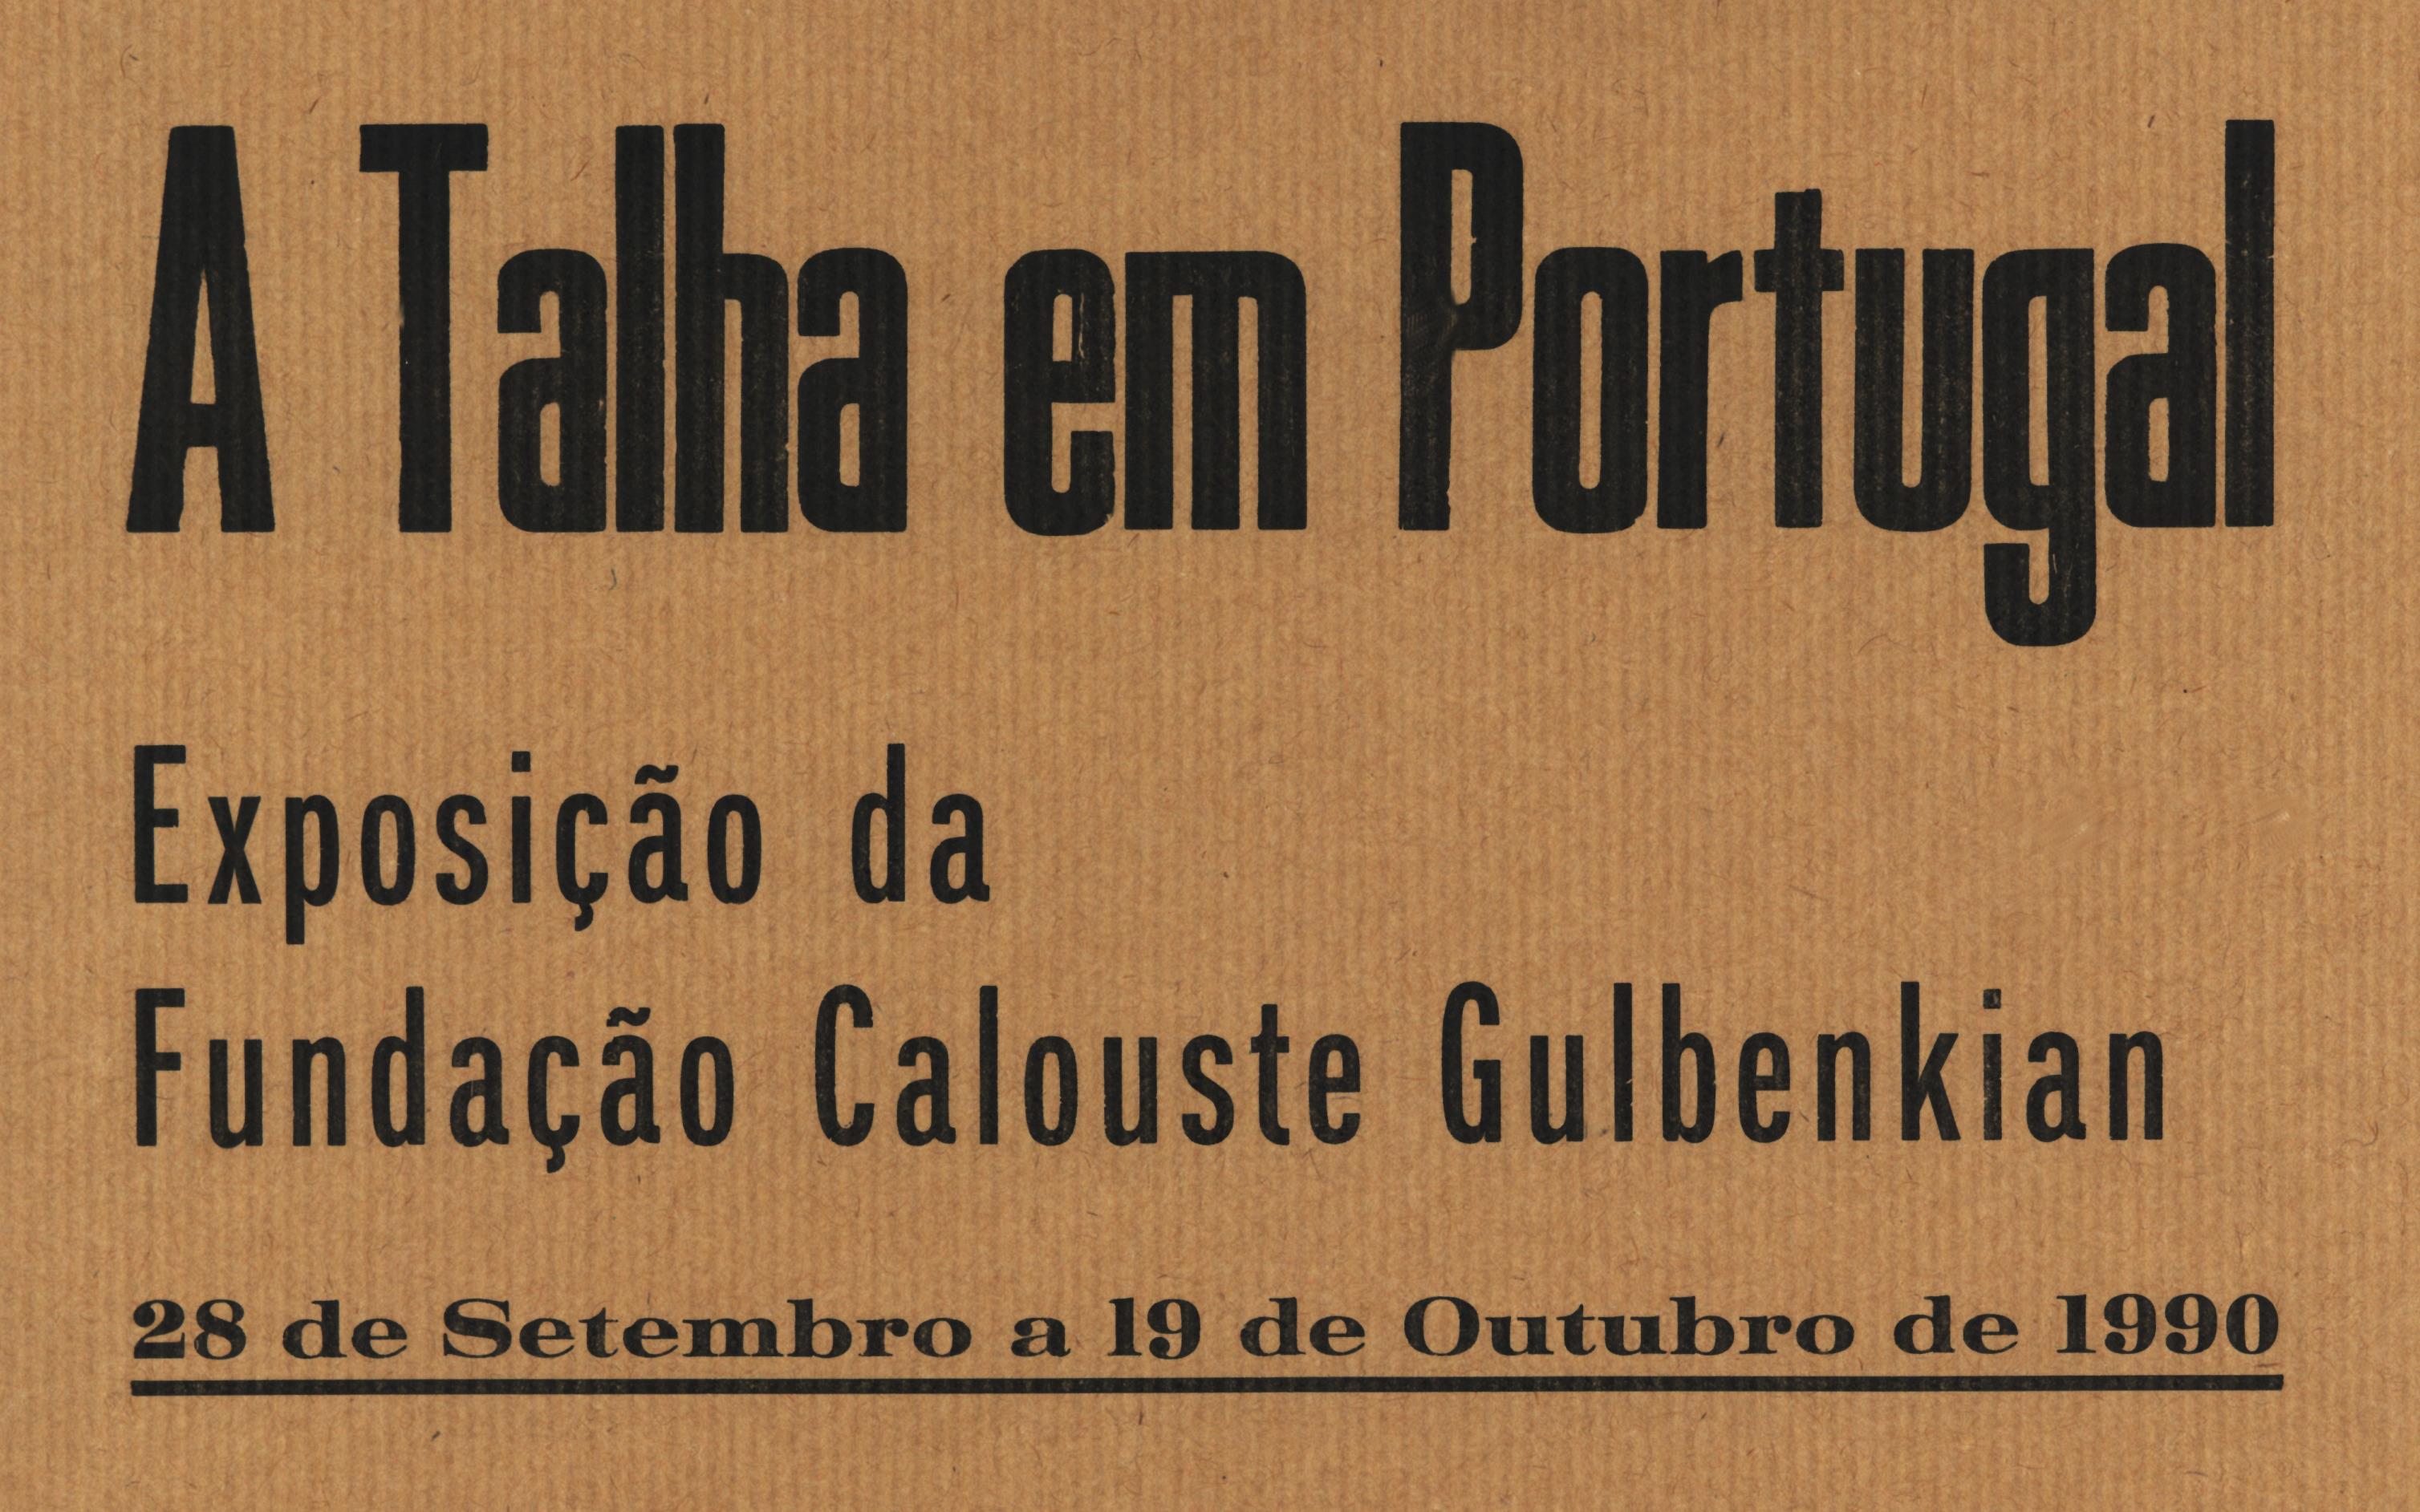 FC_reg.1452_A Talha em Portugal